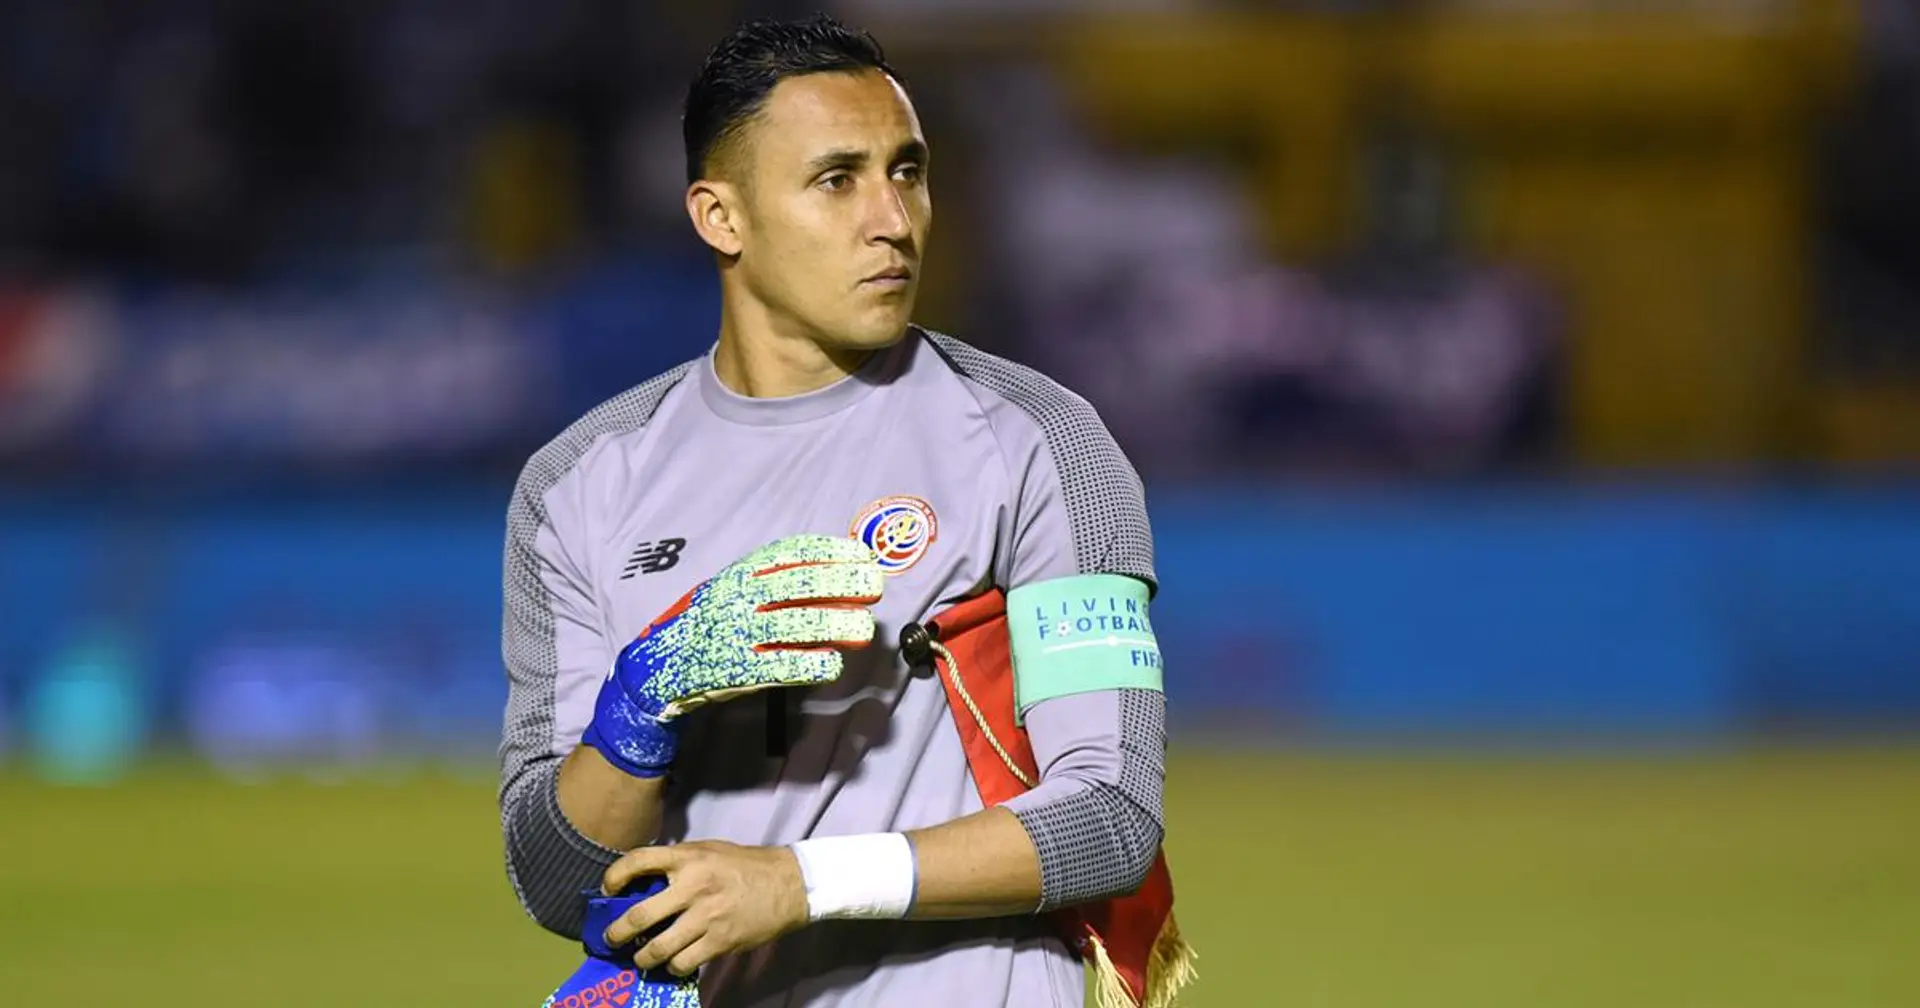 Keylor Navas a été titulaire et a joué le match complet avec le Costa-Rica malgré sa blessure